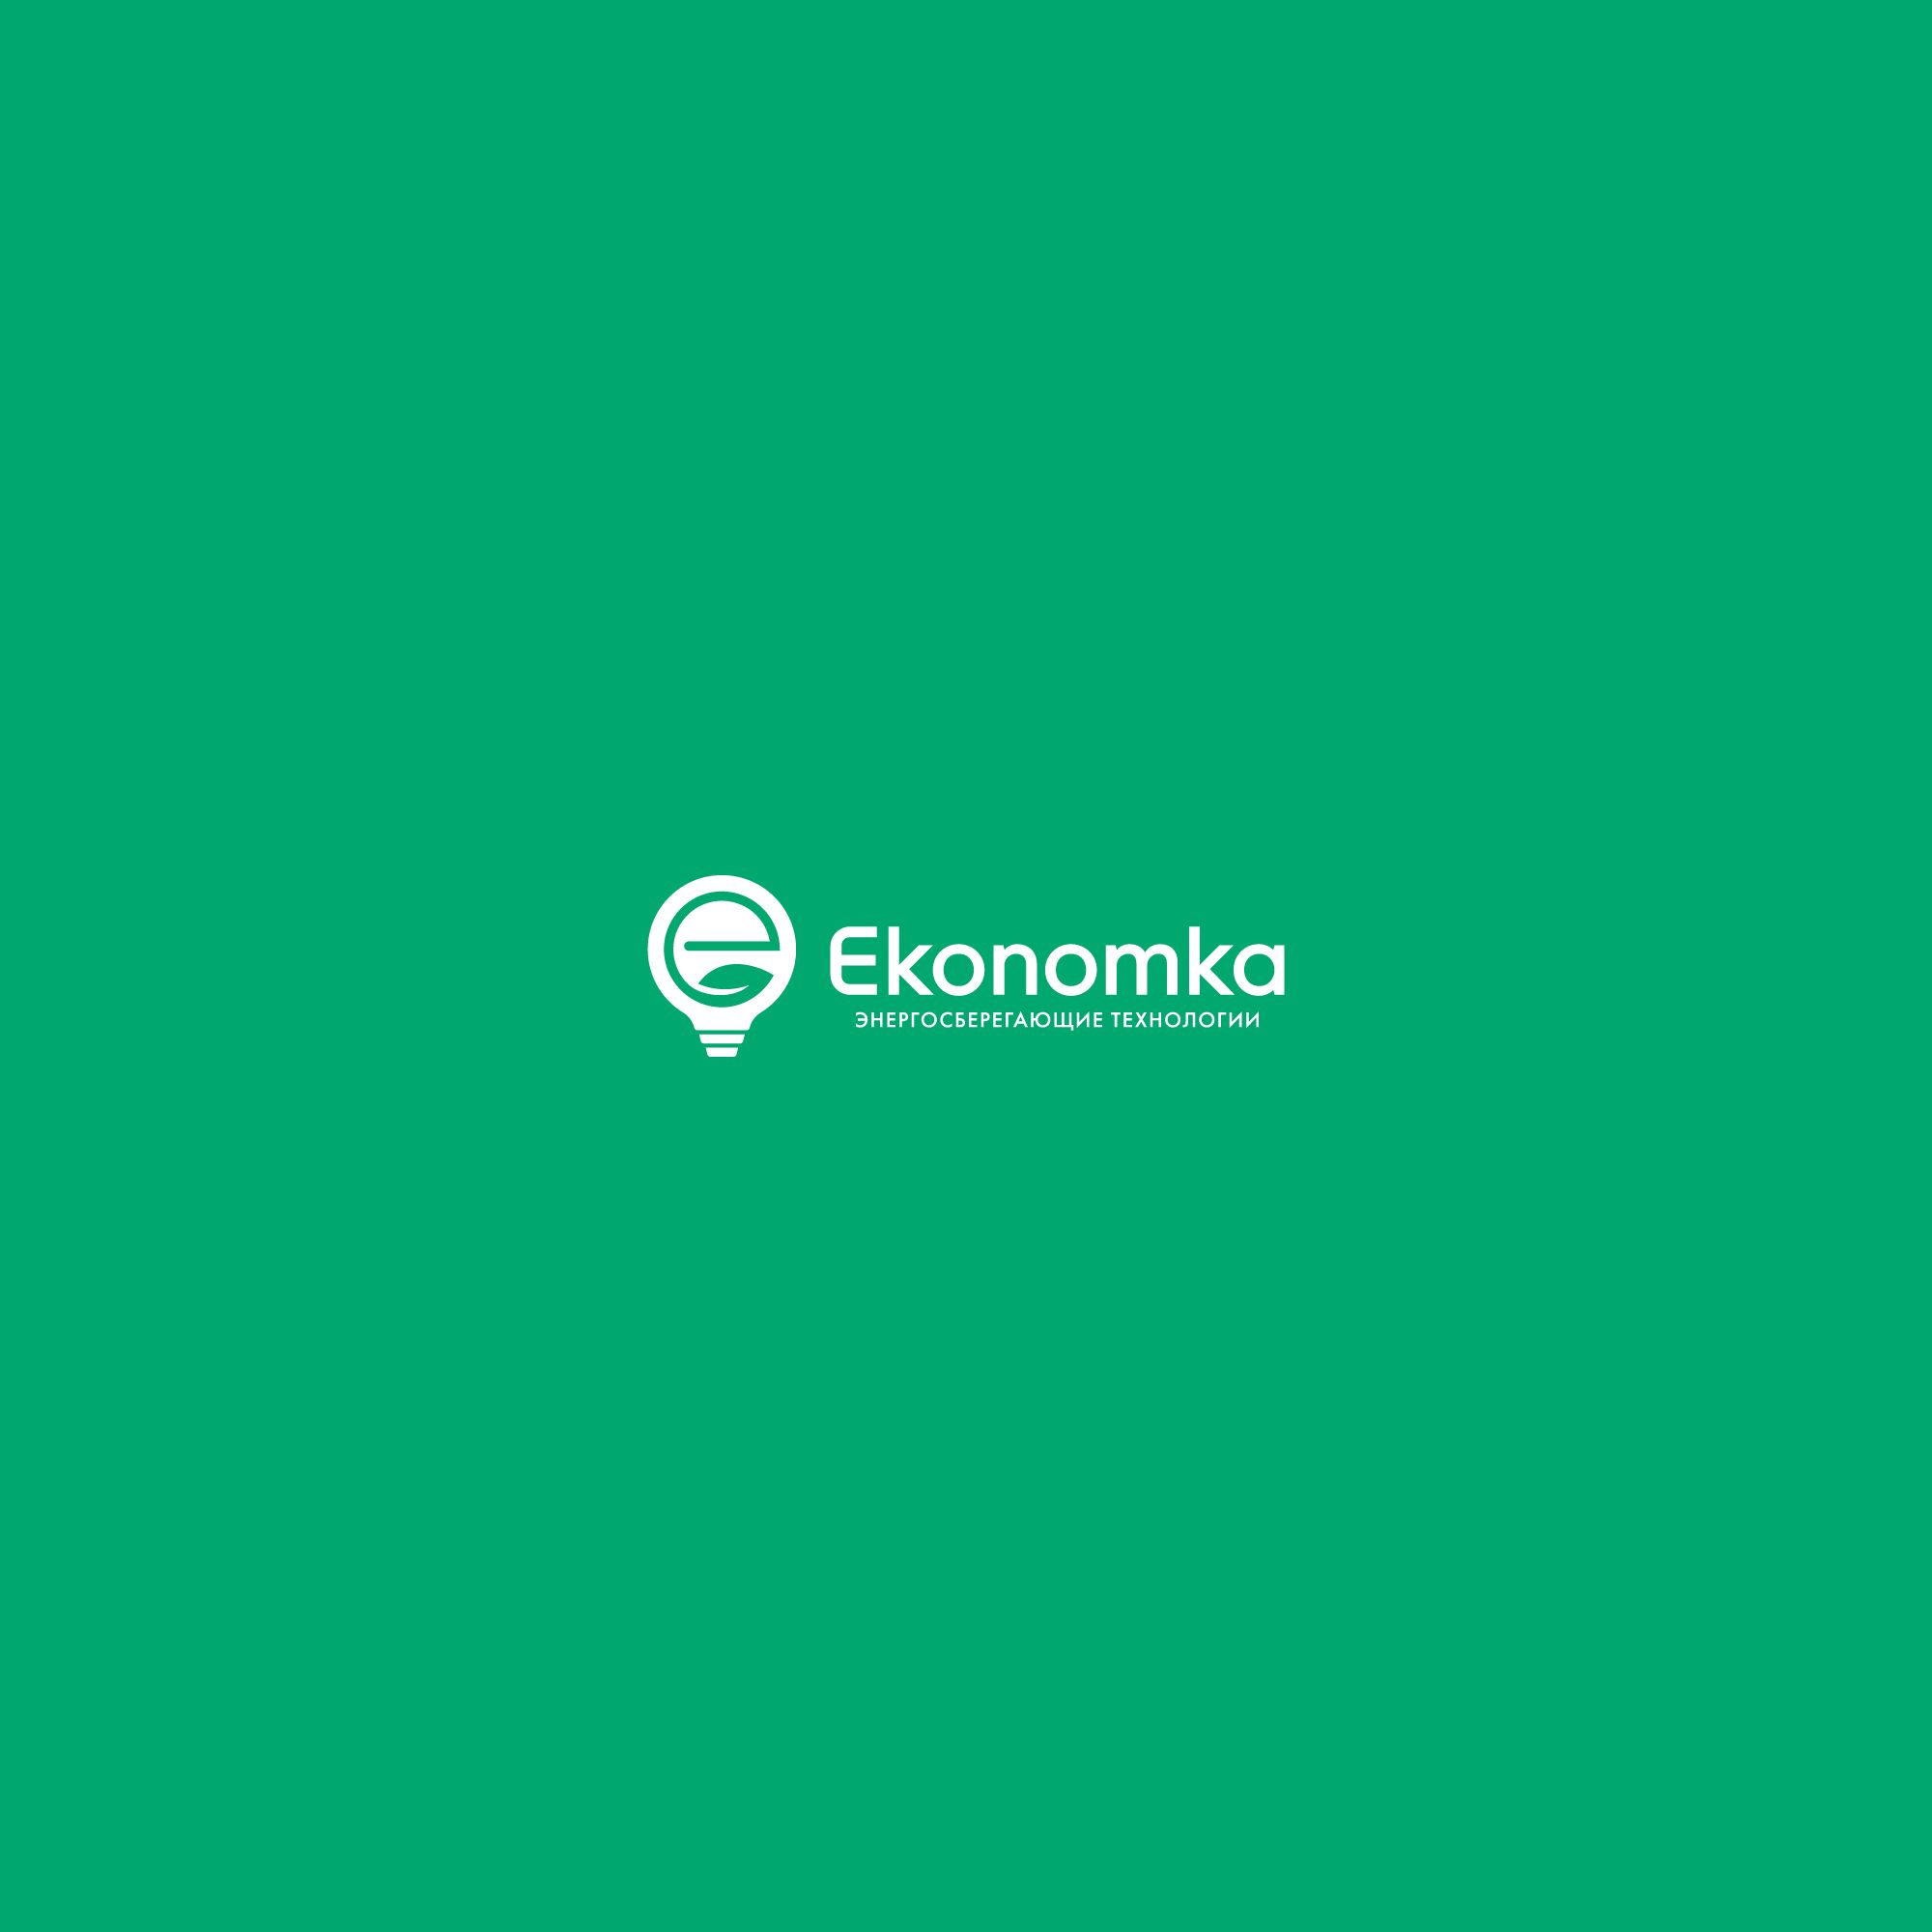 Логотип для энергосберигающих технологий Ekonomka - дизайнер nuttale